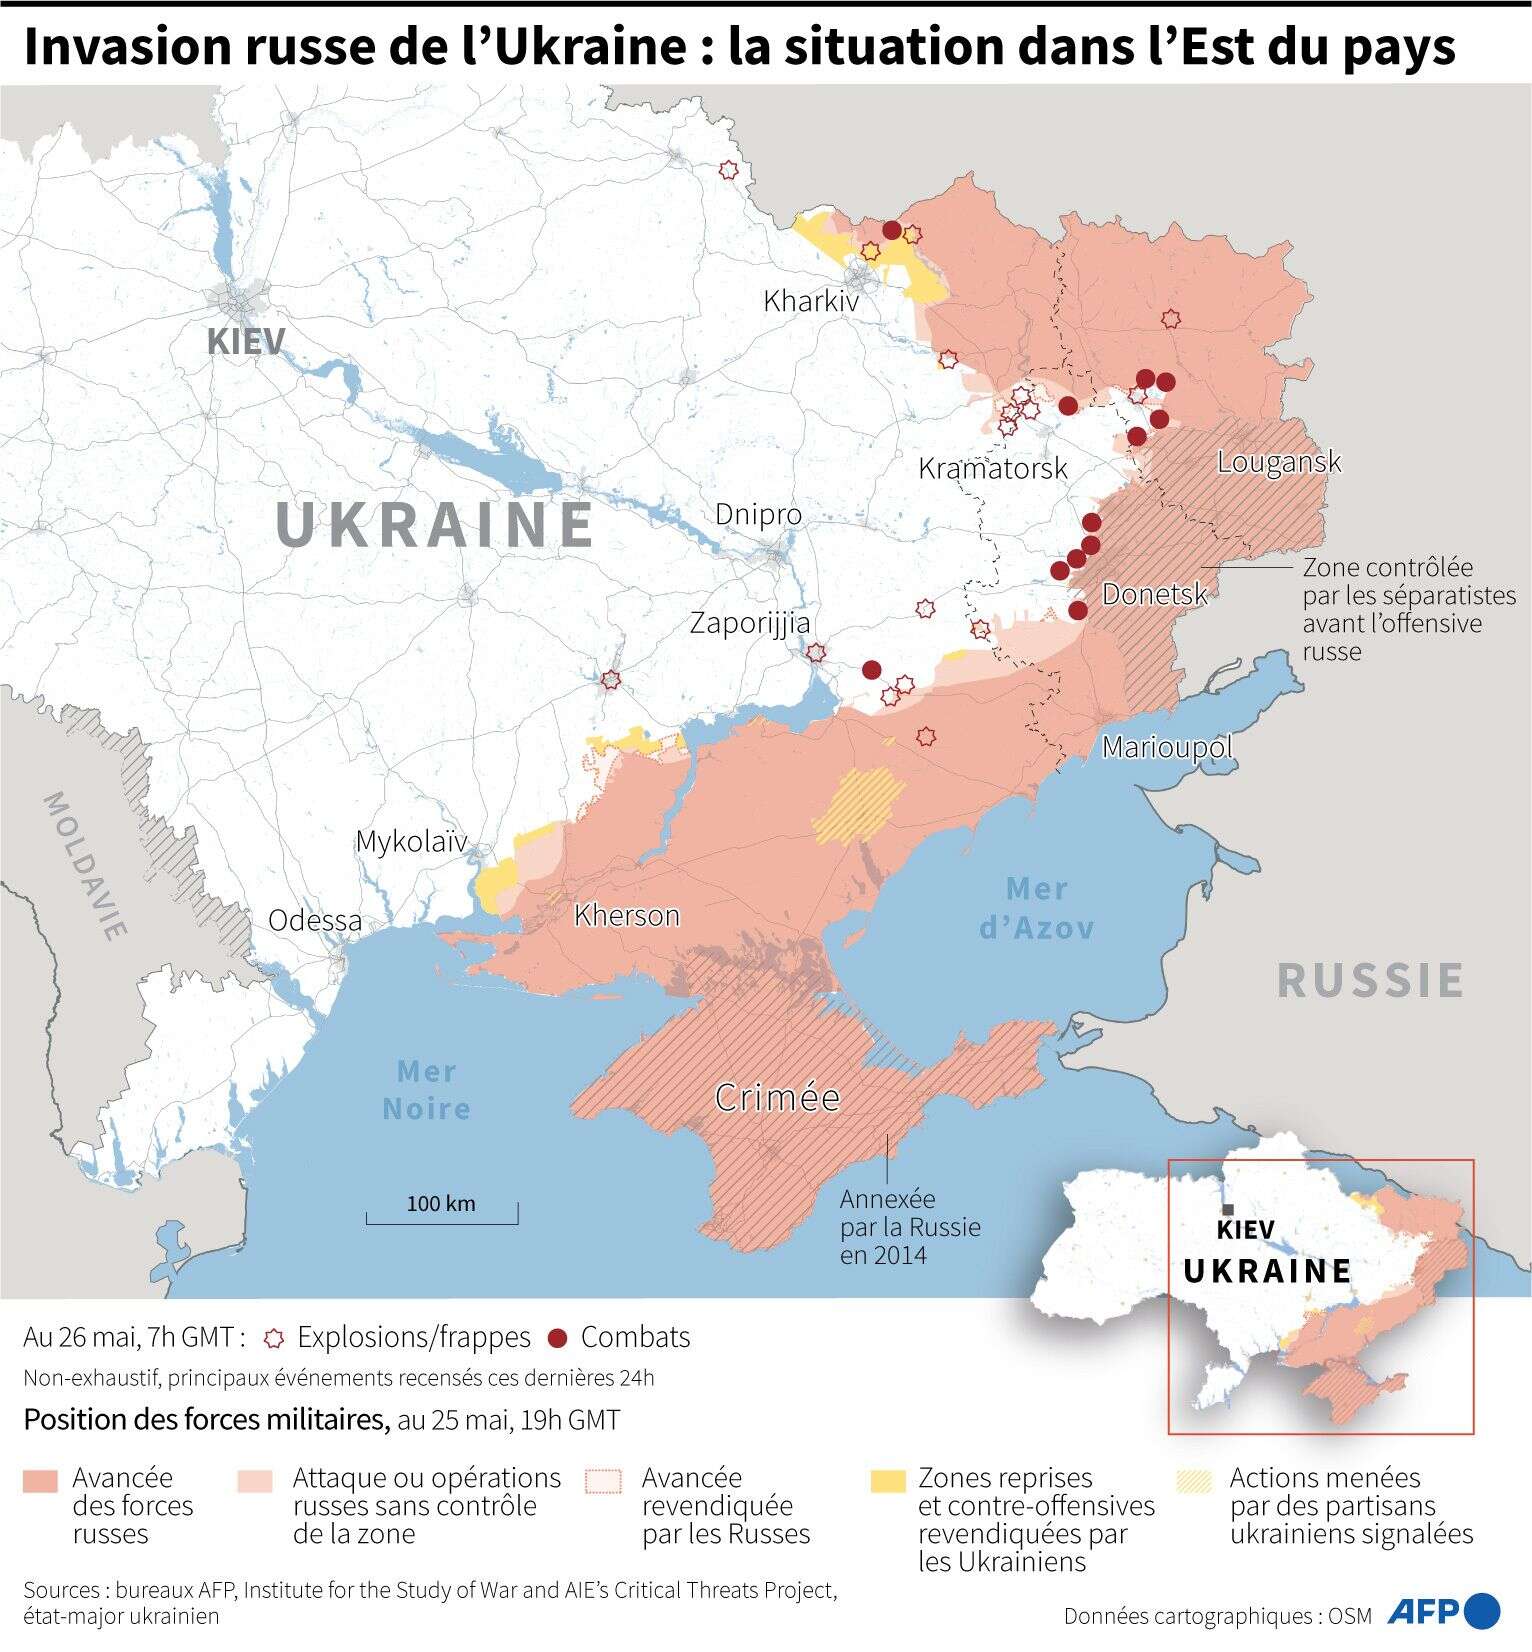 Ukraine invasion russe